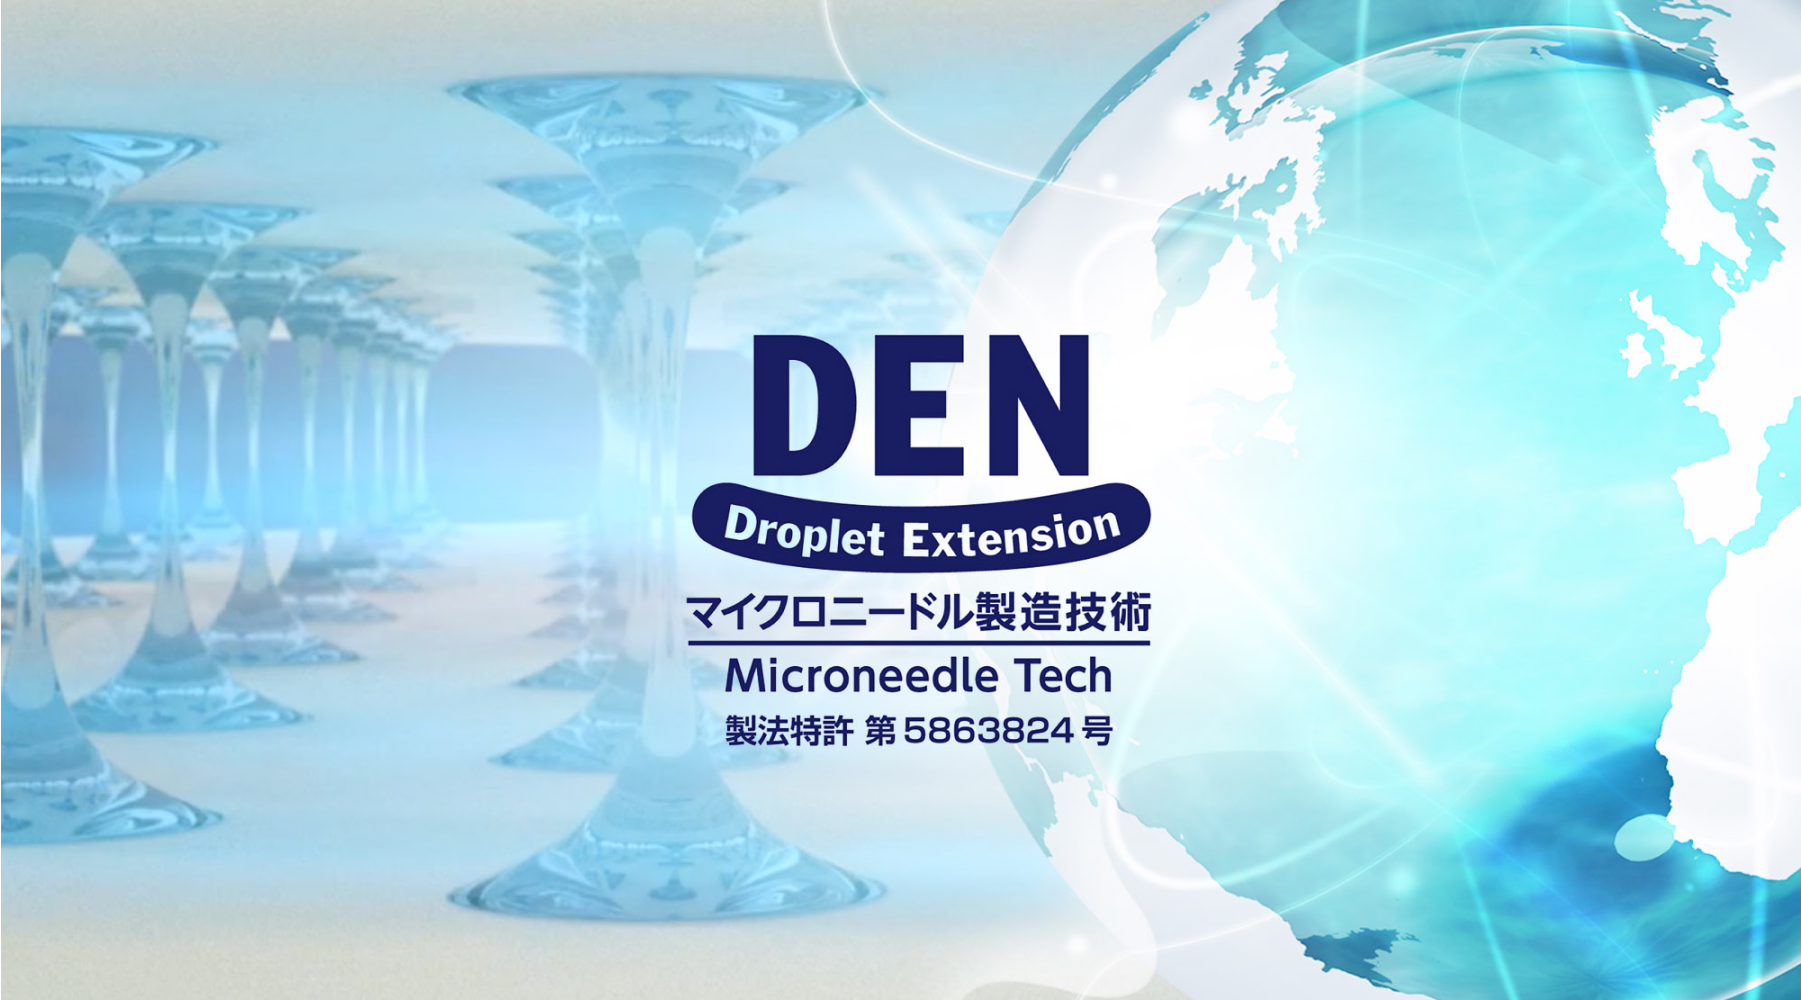 DEN Droplet Extension